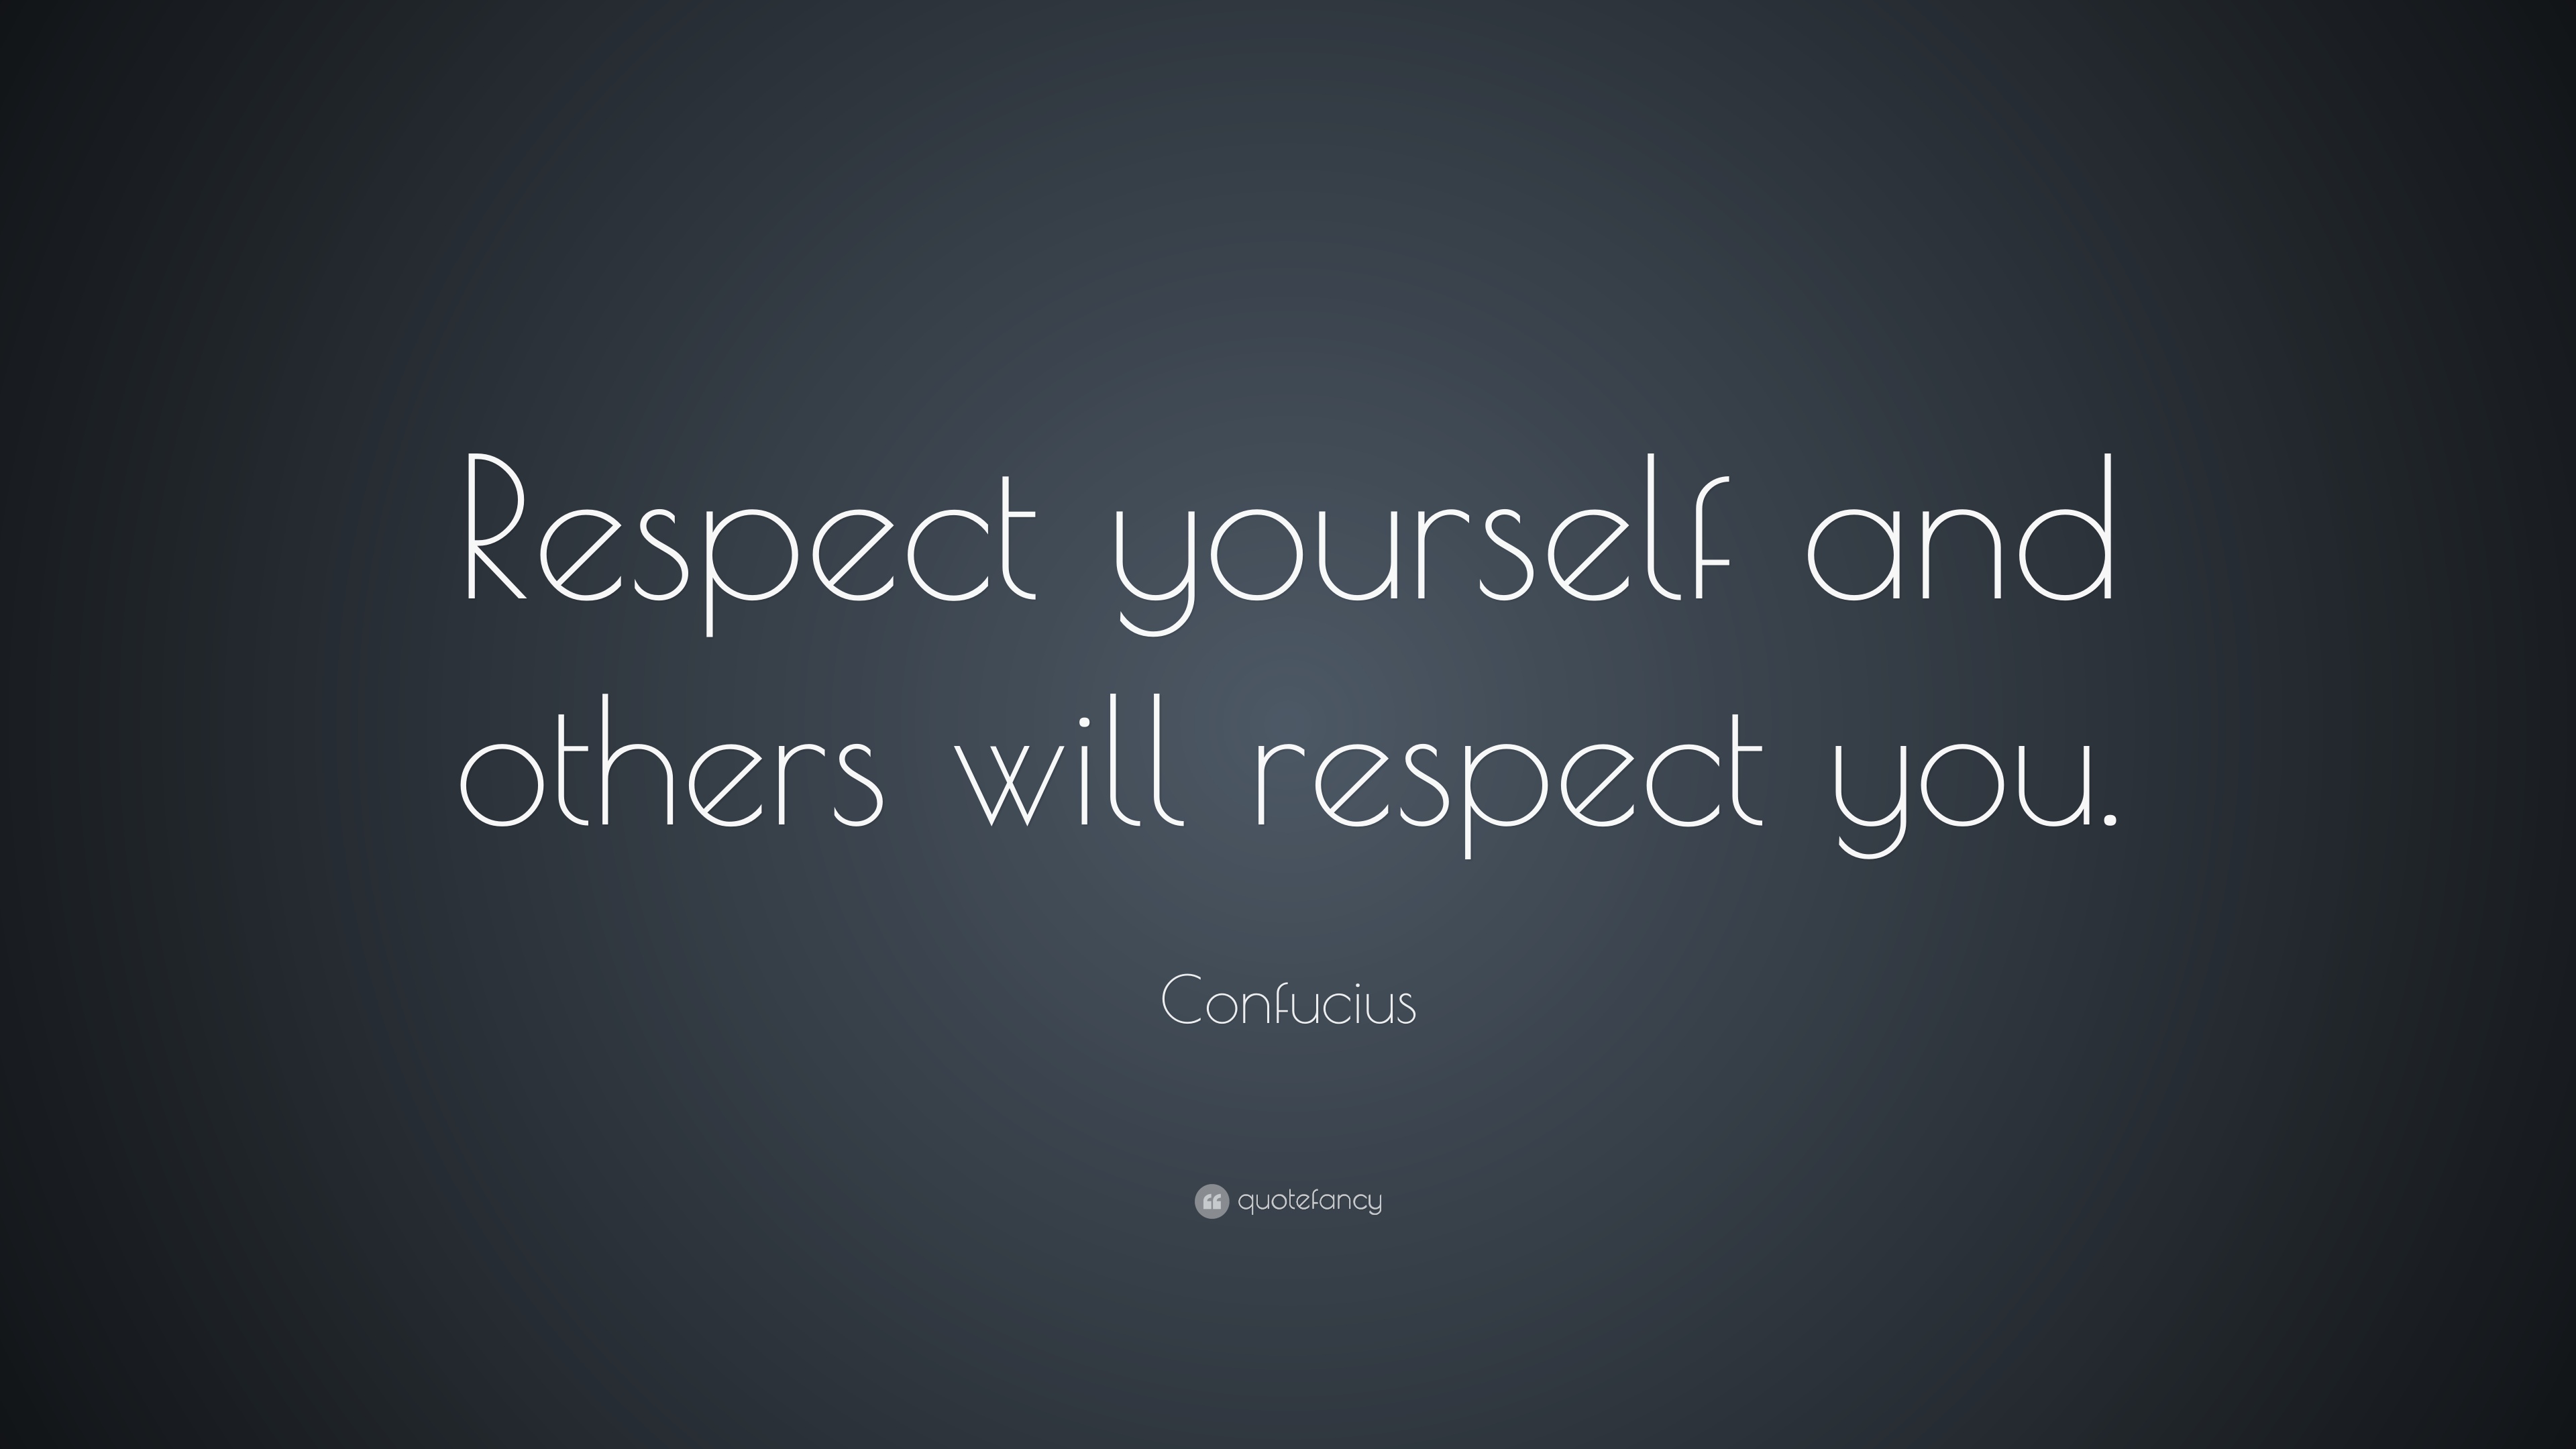 Inspirational Quotes: Confucius - Respect